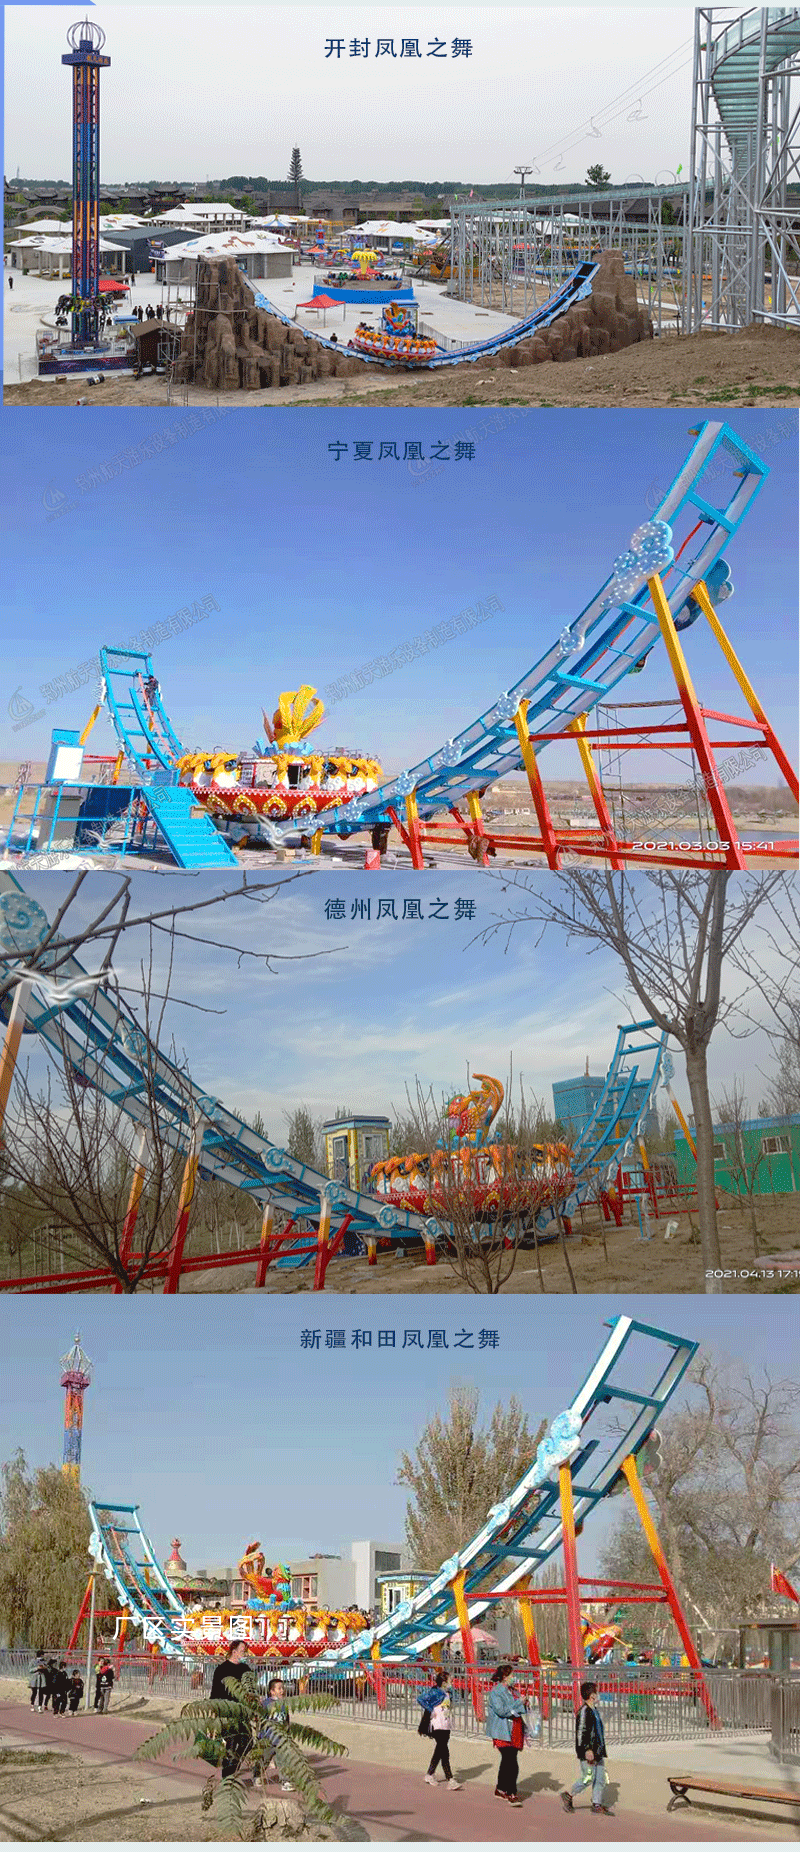 郑州新型空中飞碟公园游乐设施航天游乐电话 4